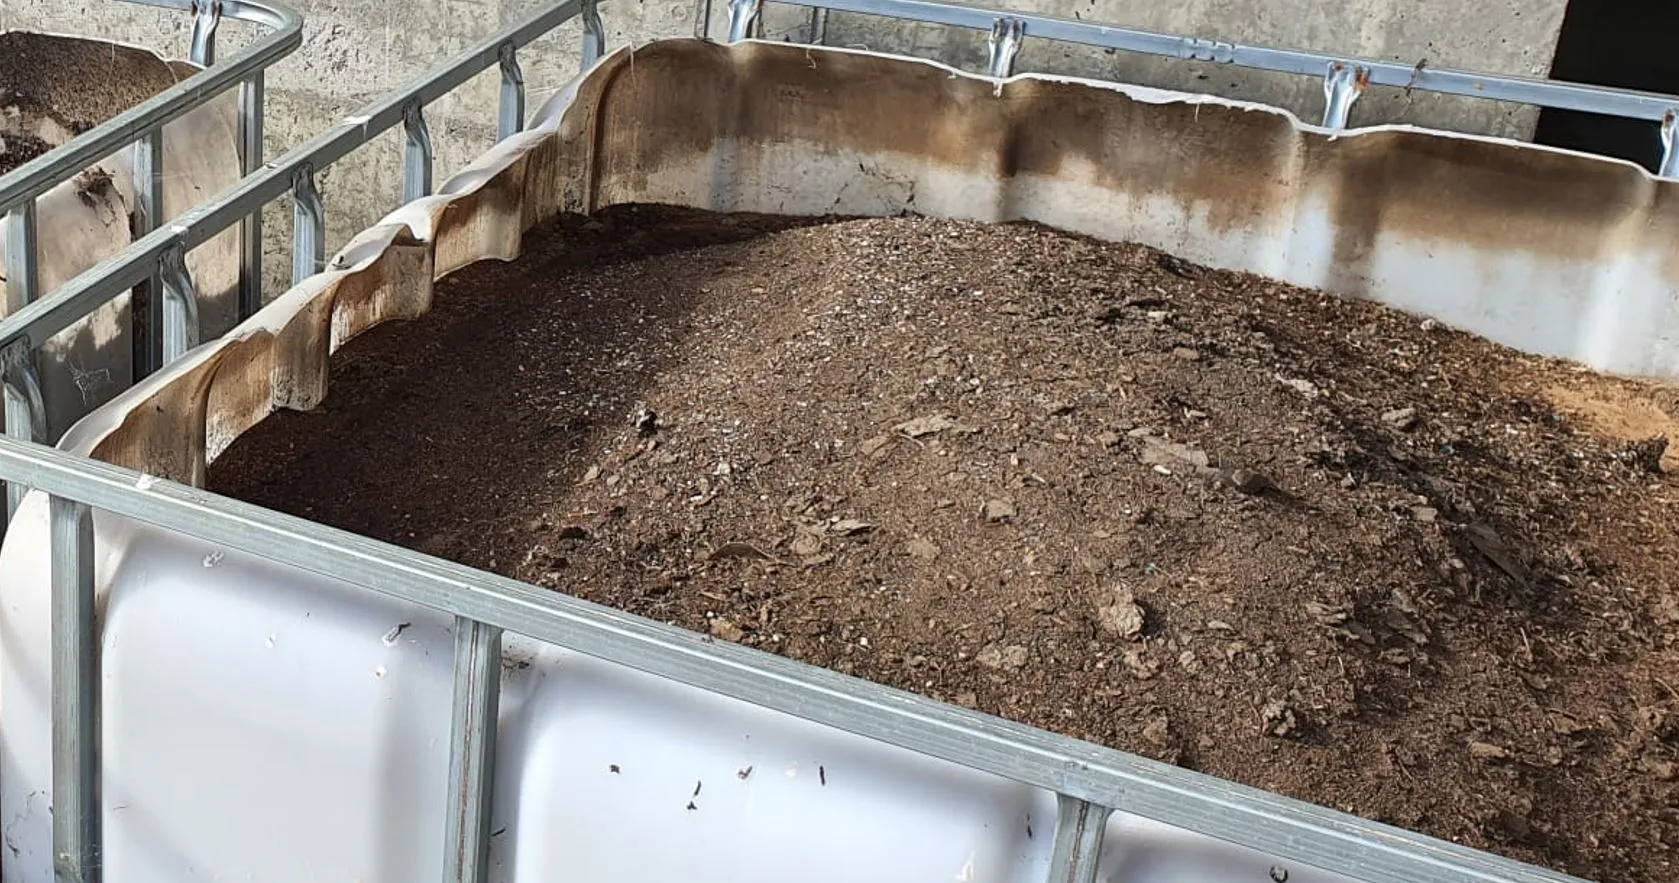 Sogama repartirá 2.000 kilos de compost entre los municipios de Carballo y Laracha